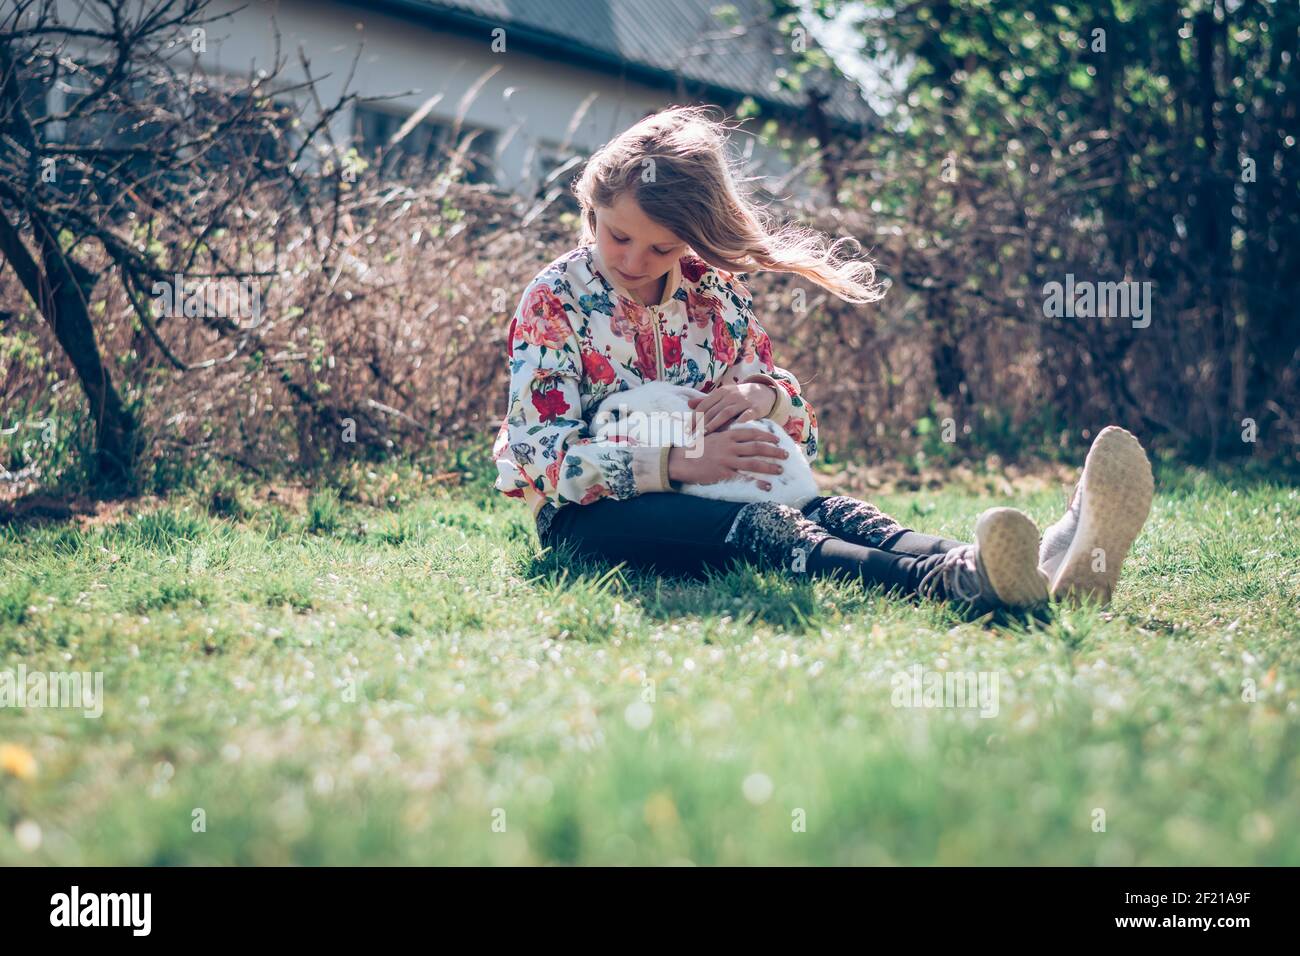 Kleines Mädchen, das im Gras sitzt und ein Weiß umarmt Flauschiges Kaninchen Haustier Stockfoto